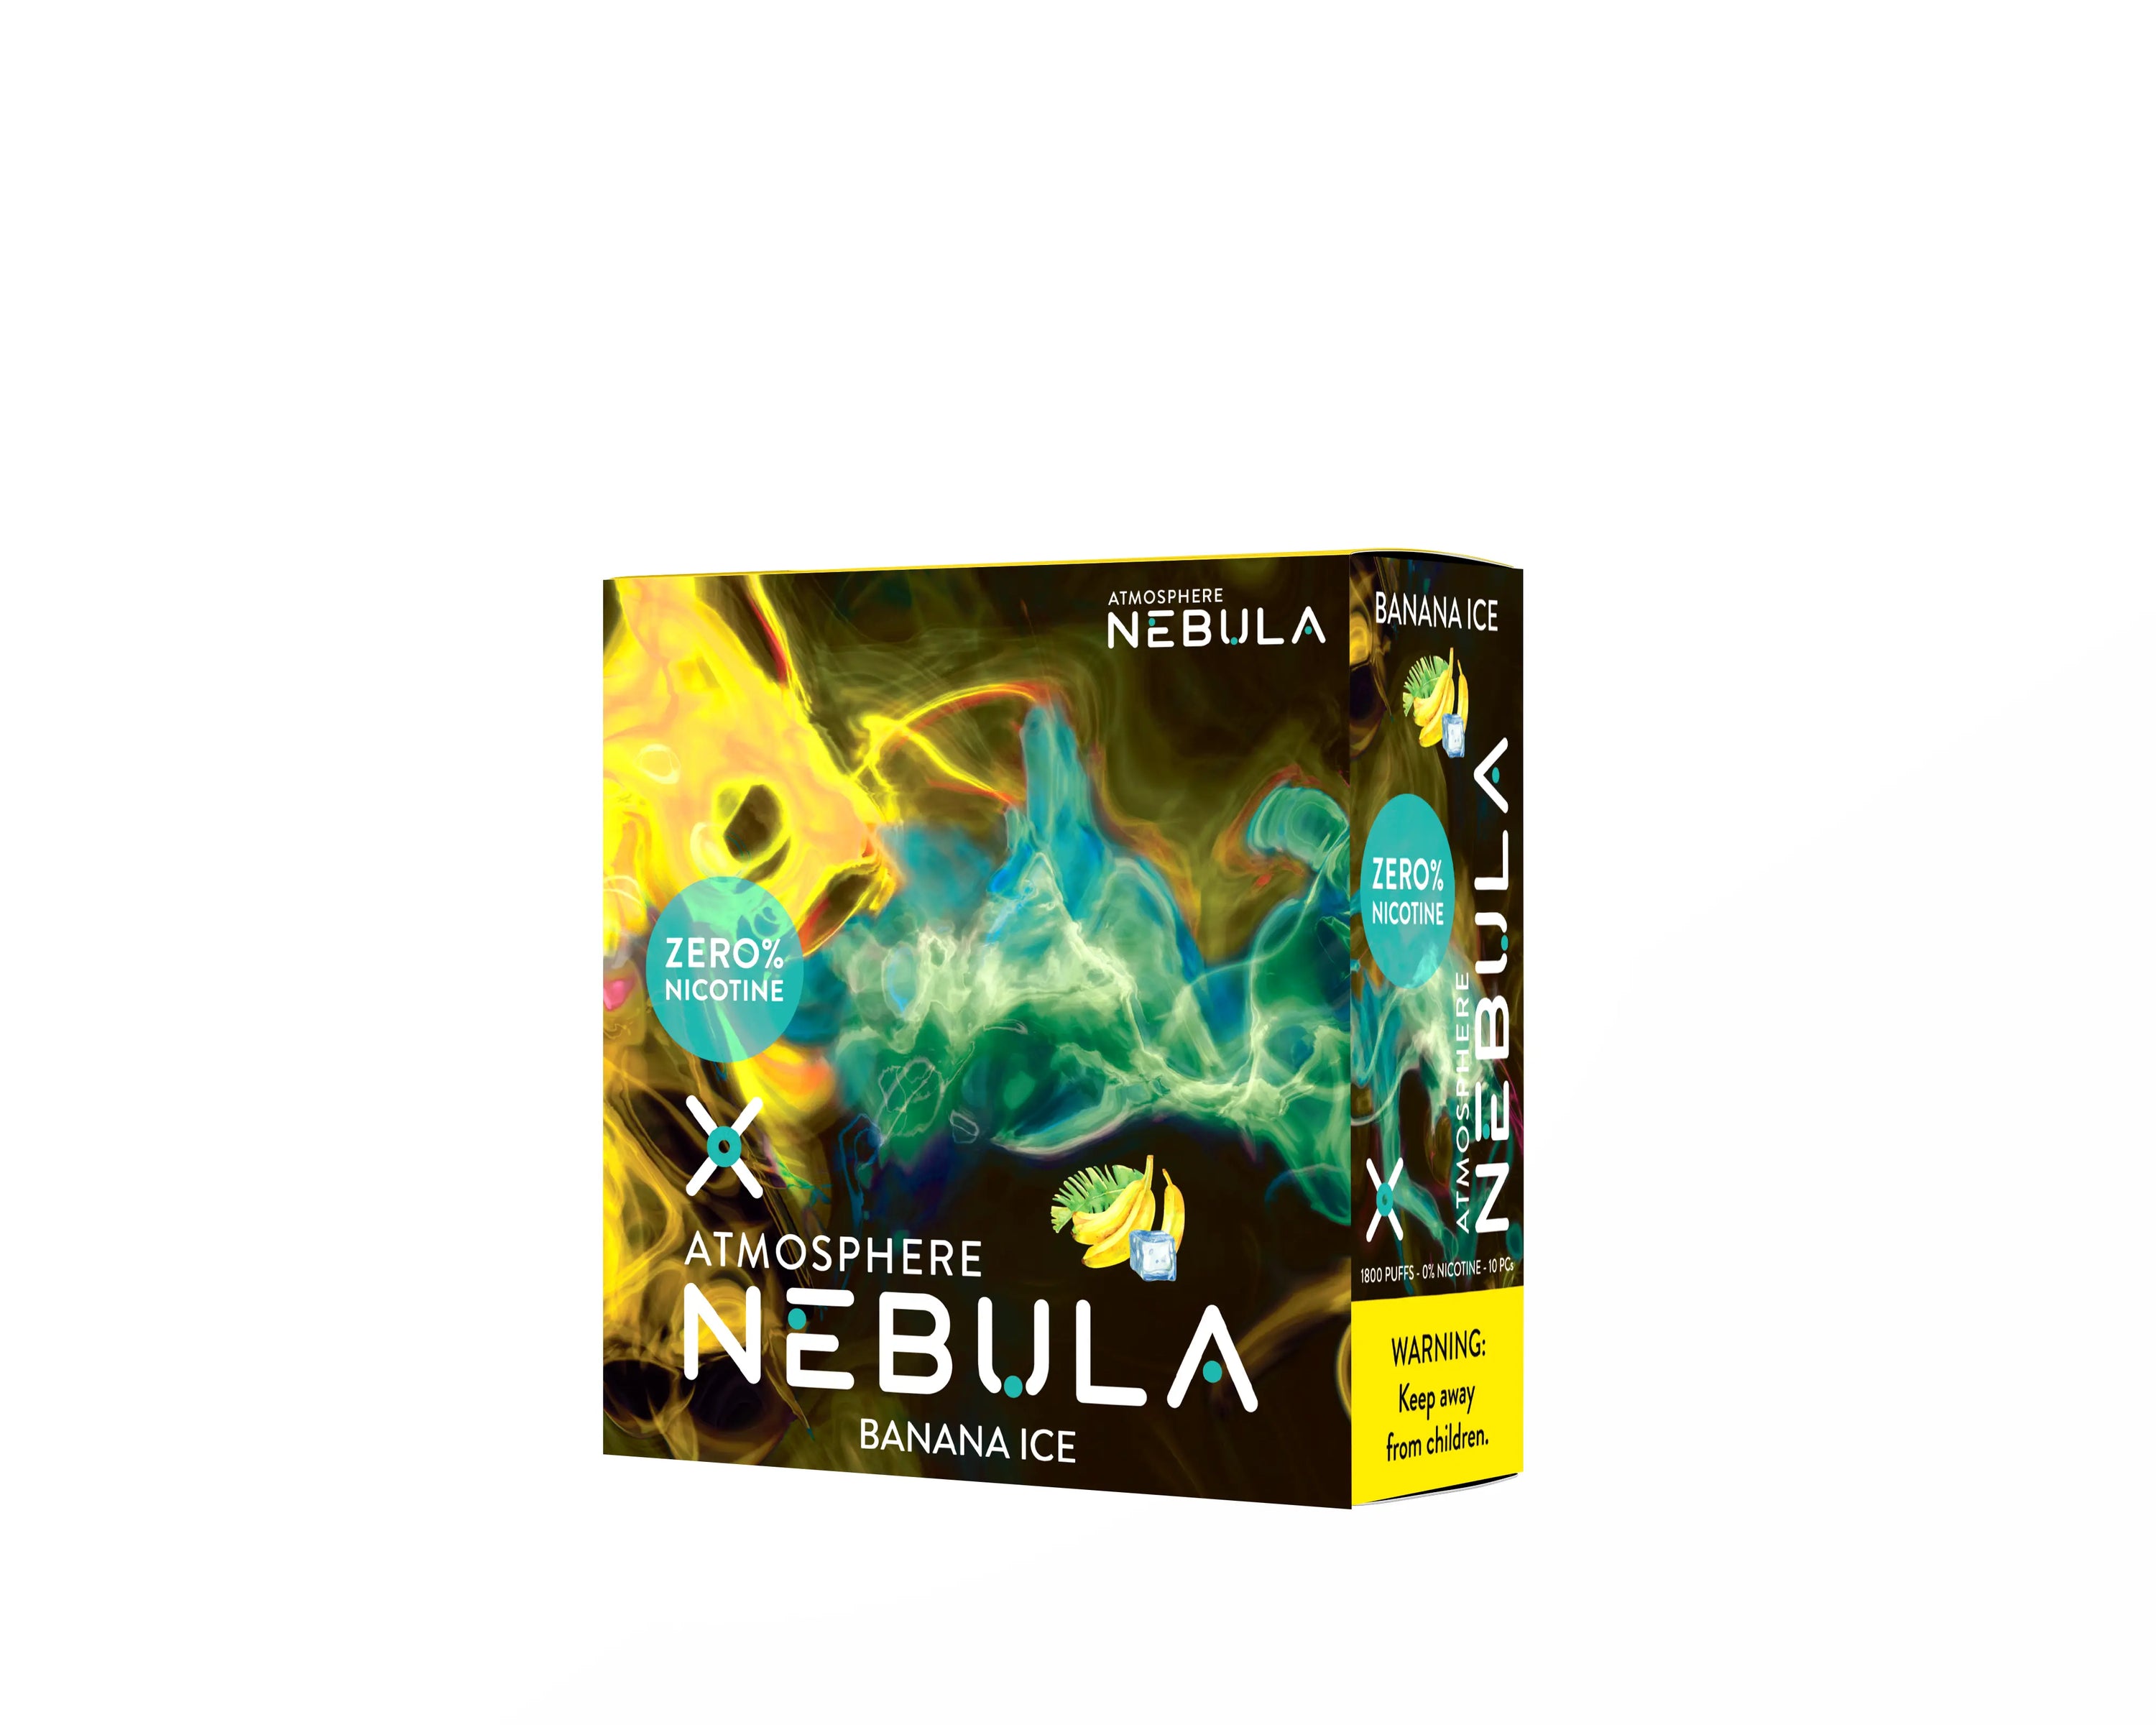 Nebula Atmosphere 0% 1800 Puffs - Banana Ice - B2B Nebula